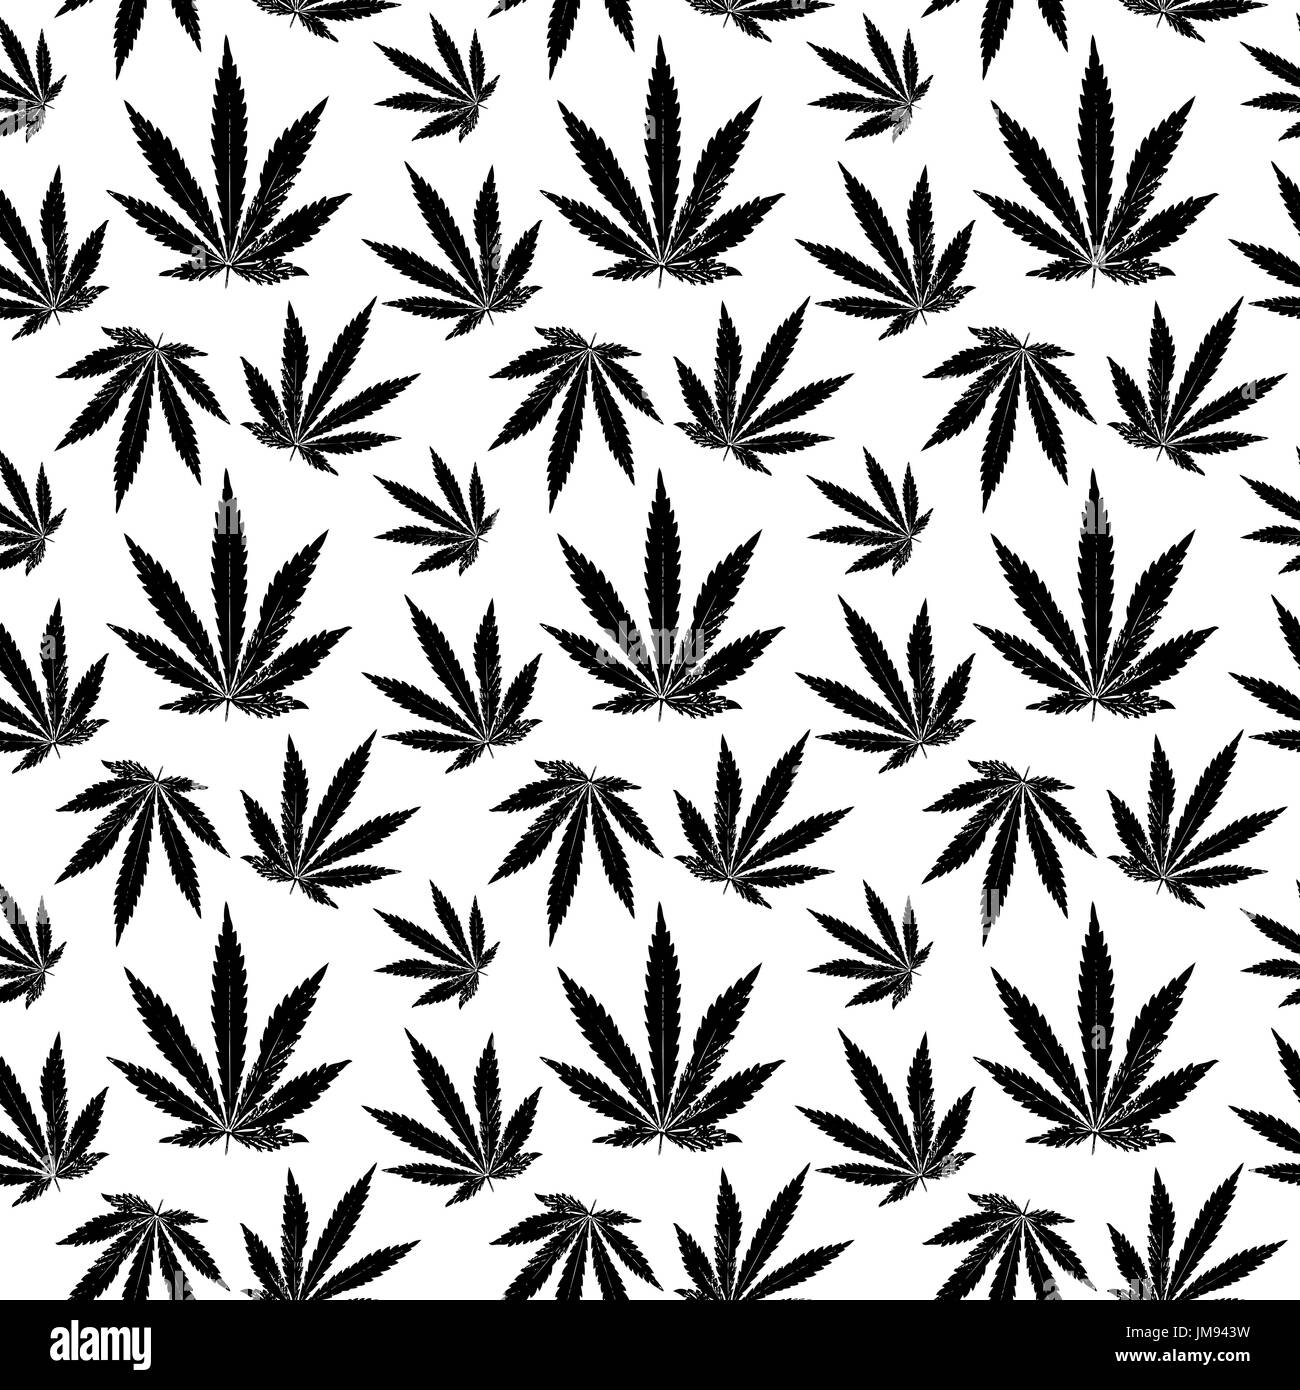 Profil de transparente vecteur feuilles de cannabis. motif transparente à partir des feuilles de cannabis Illustration de Vecteur